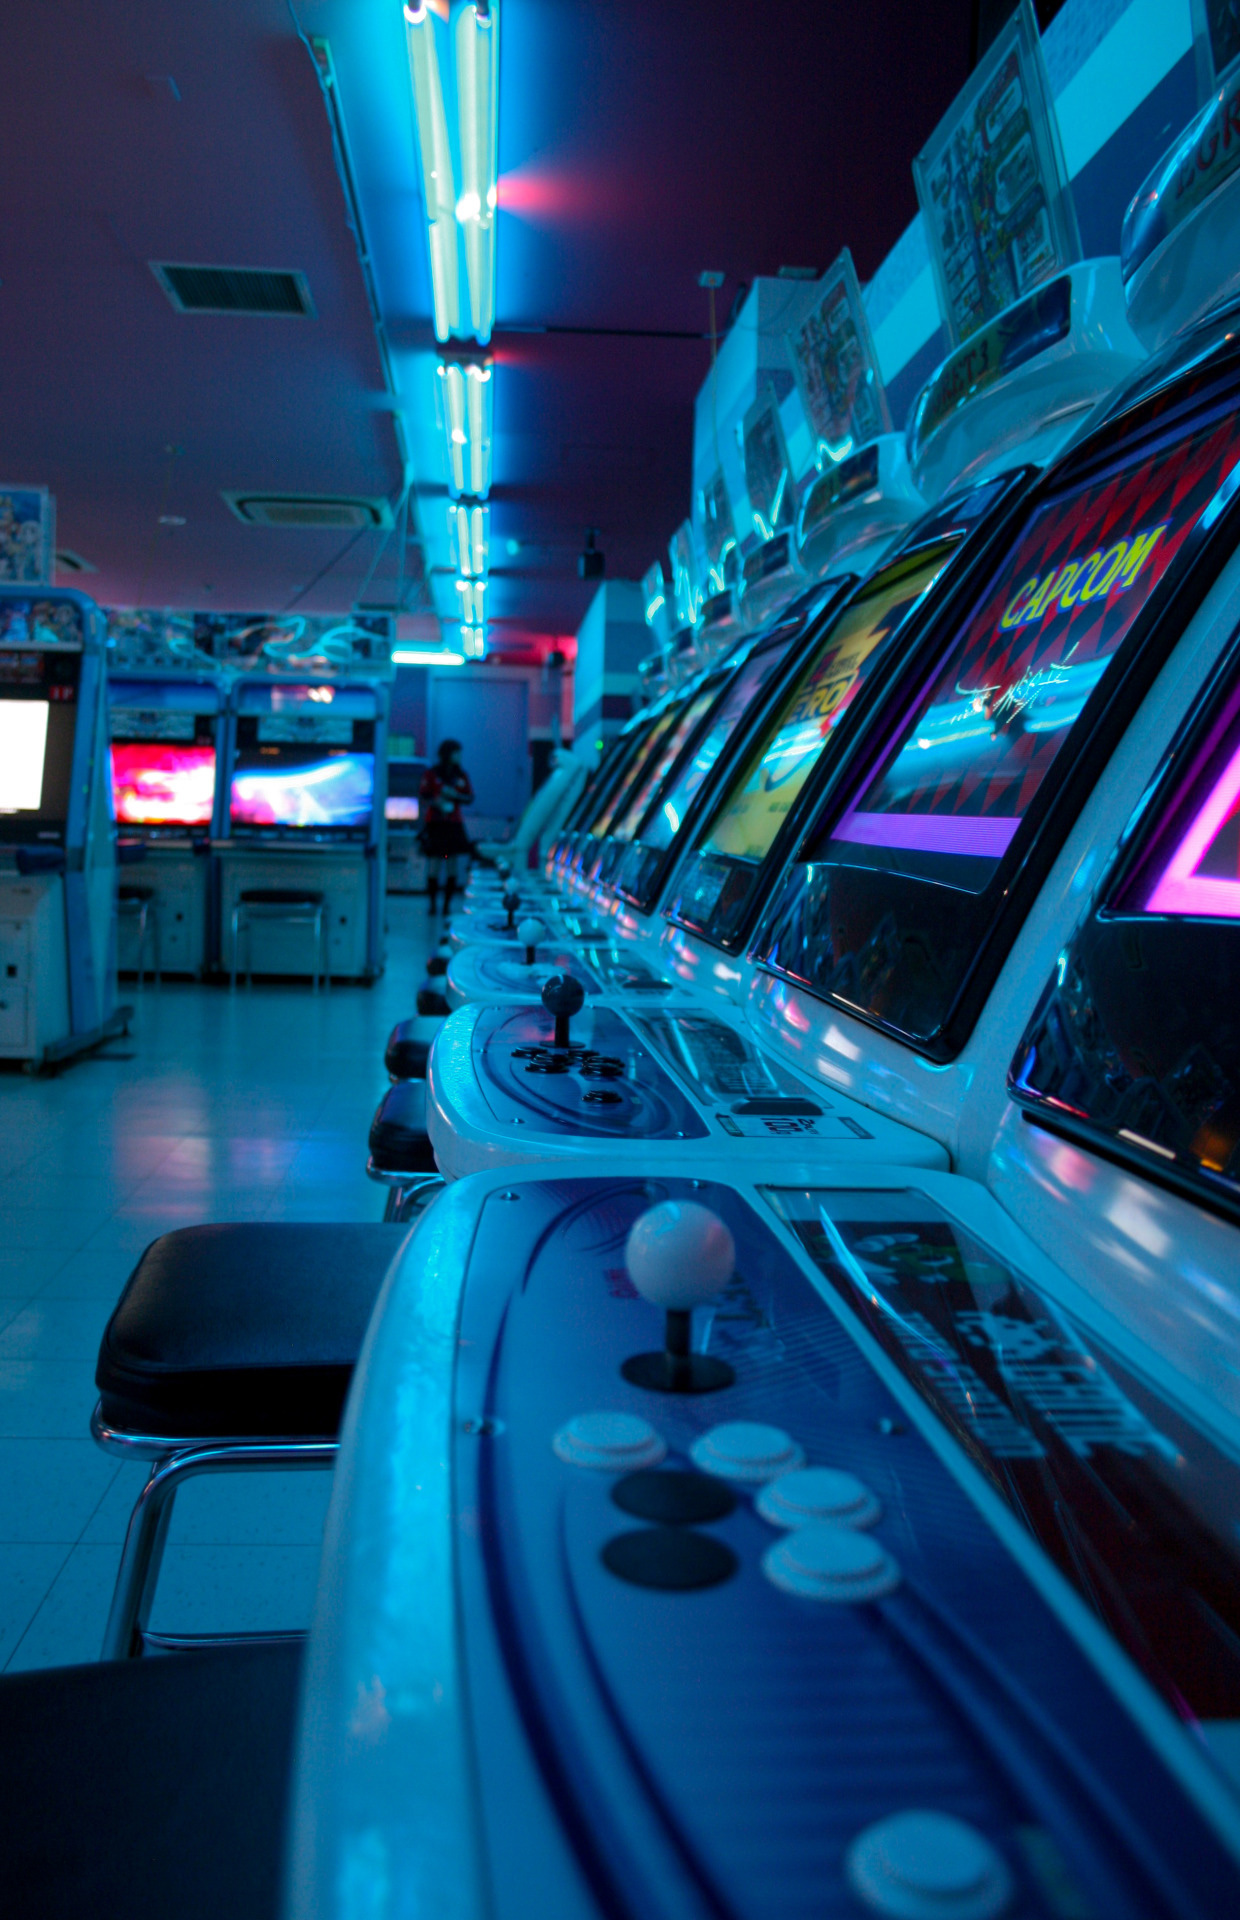 Arcade Arcade Cabinet Video Games Indoors Capcom Japan 1240x1920